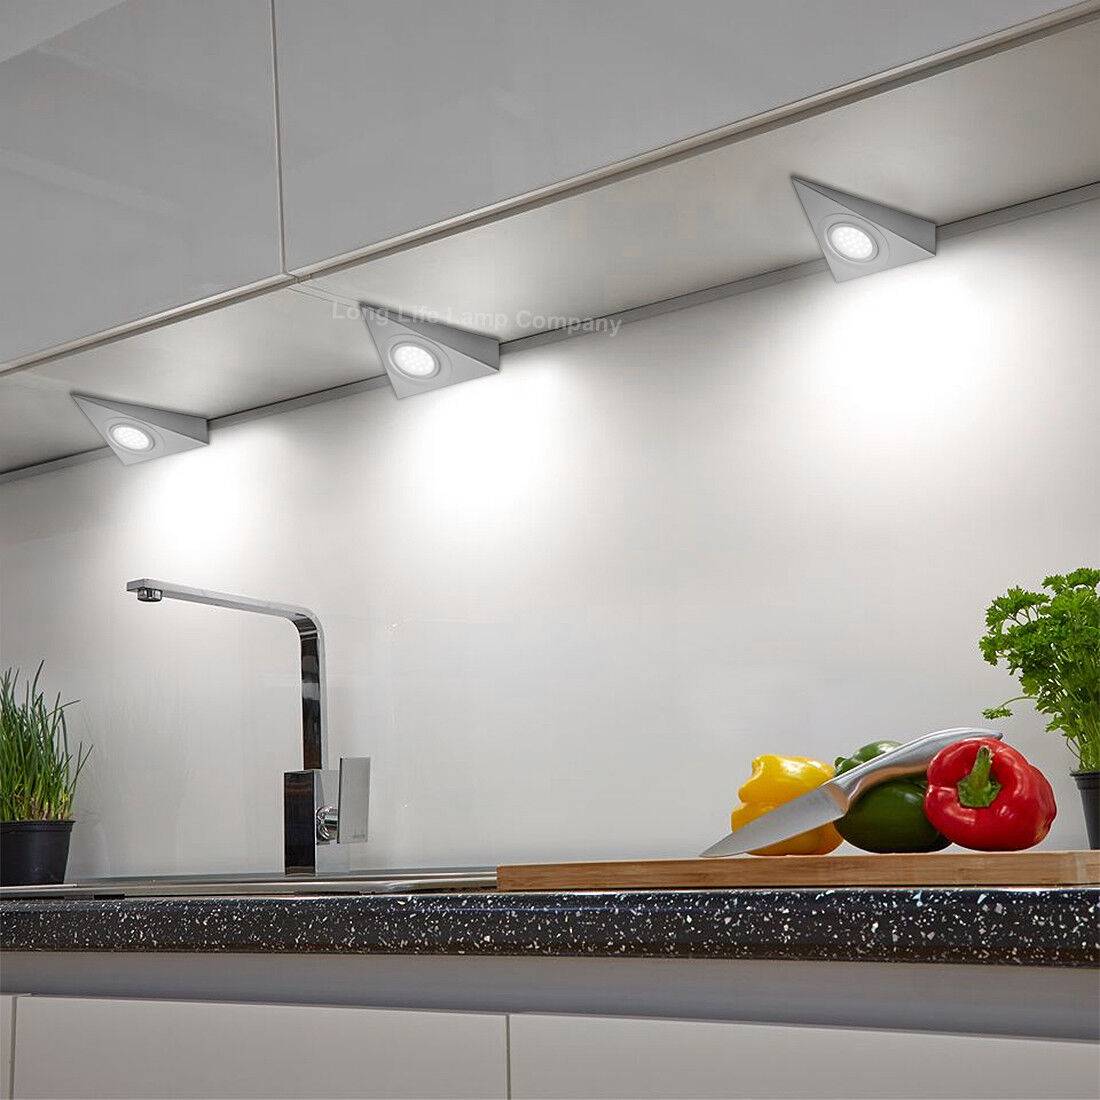 Обзор разных вариантов освещения на кухне и монтаж своими руками